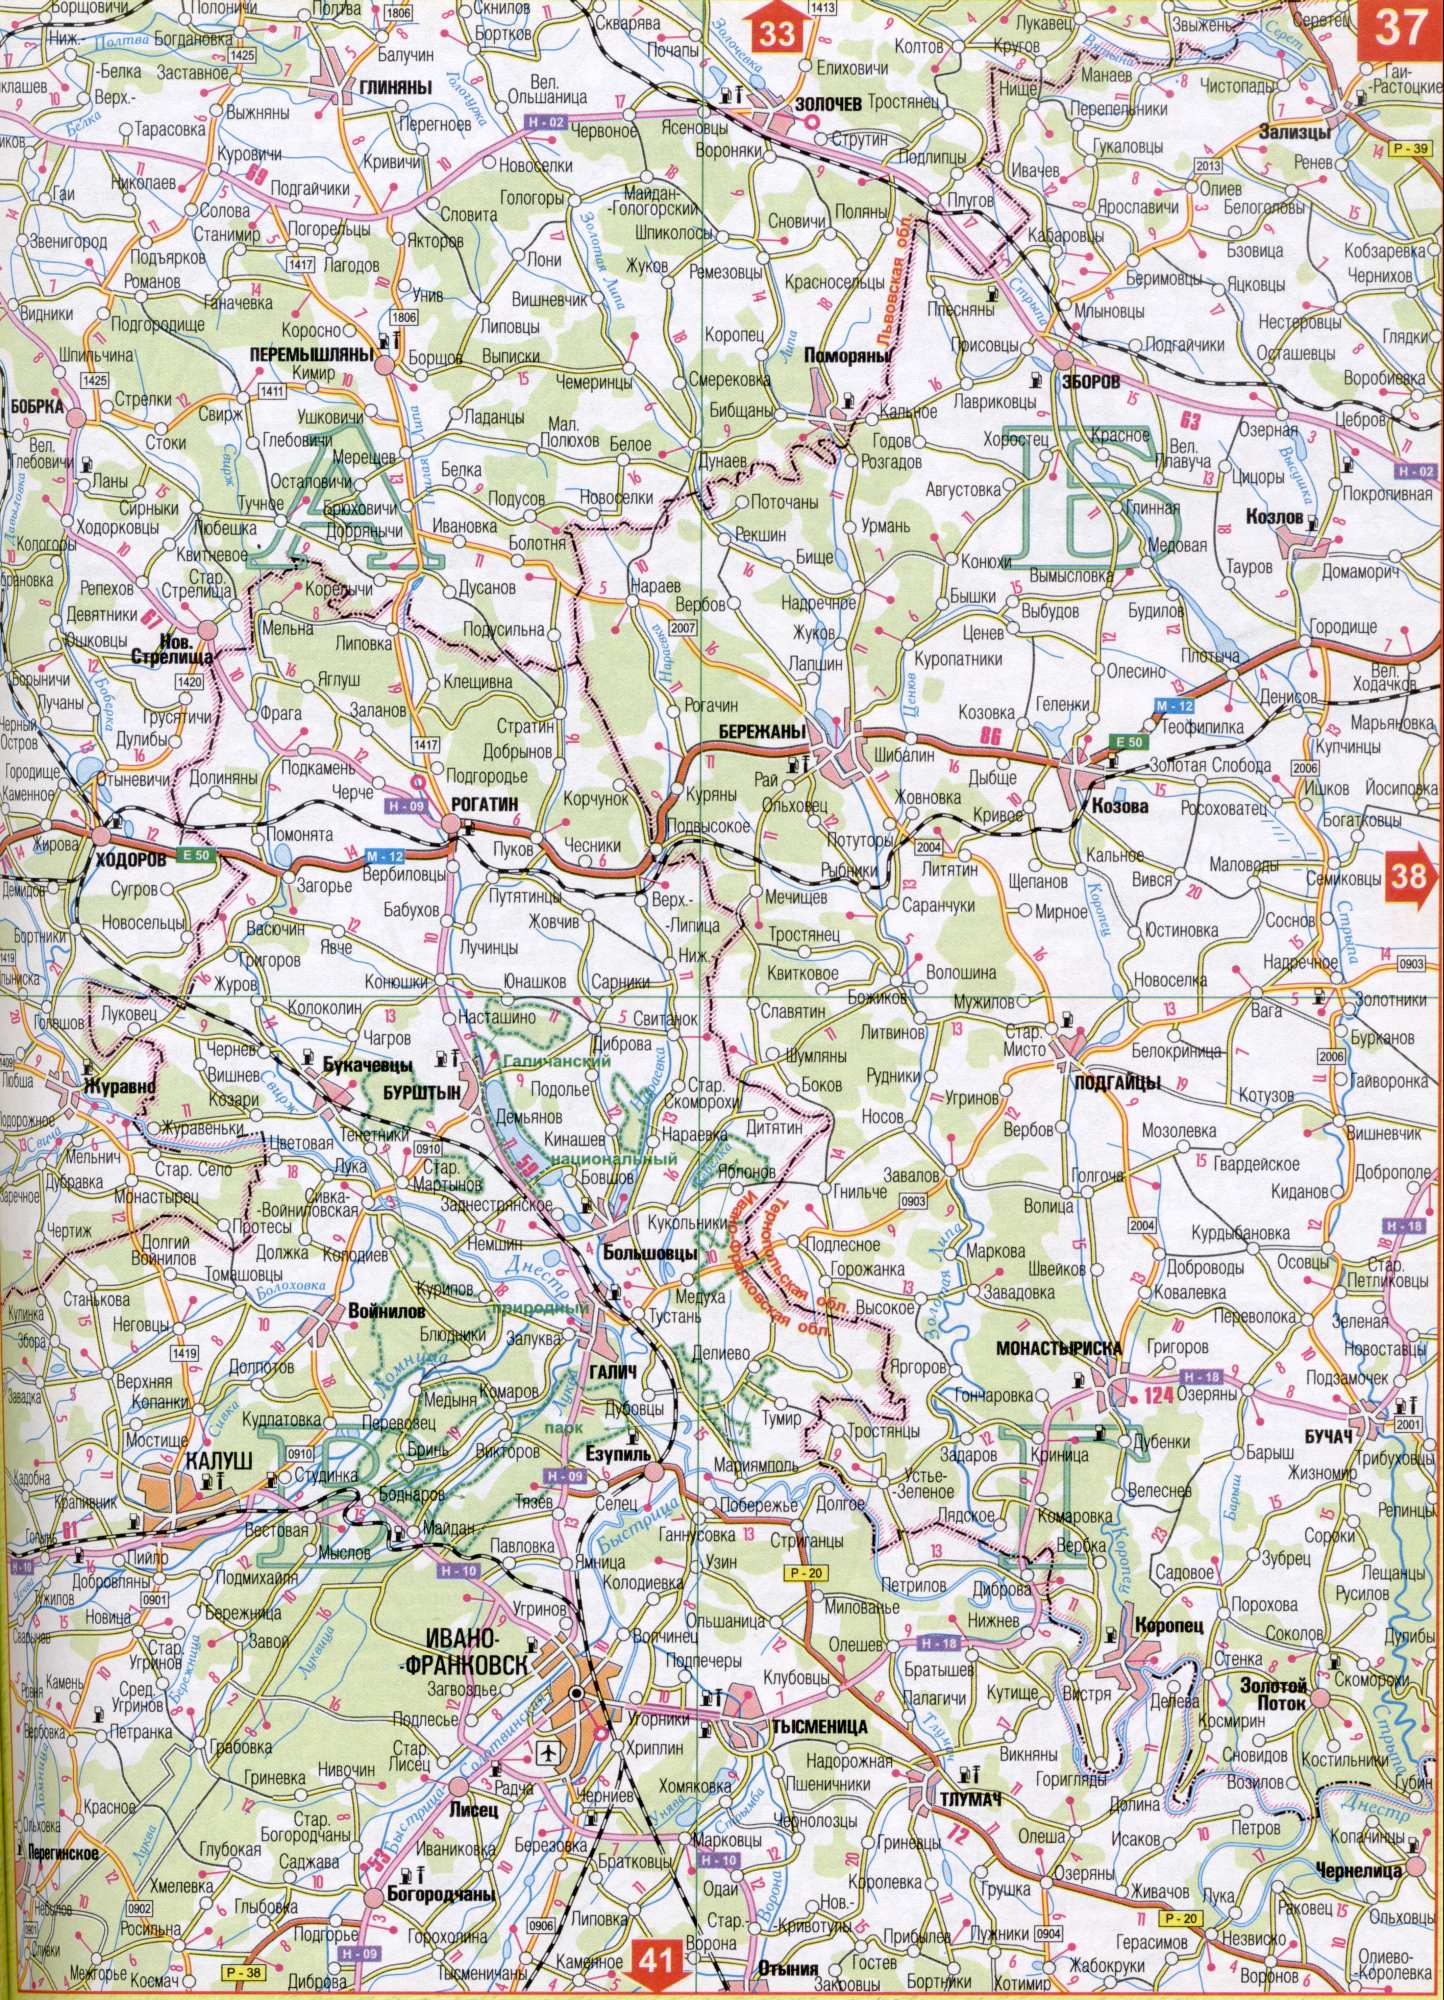 Karte von Iwano-Frankiwsk Region der Ukraine. Laden Sie eine detaillierte Karte von Kfz-dorogreka Nistru